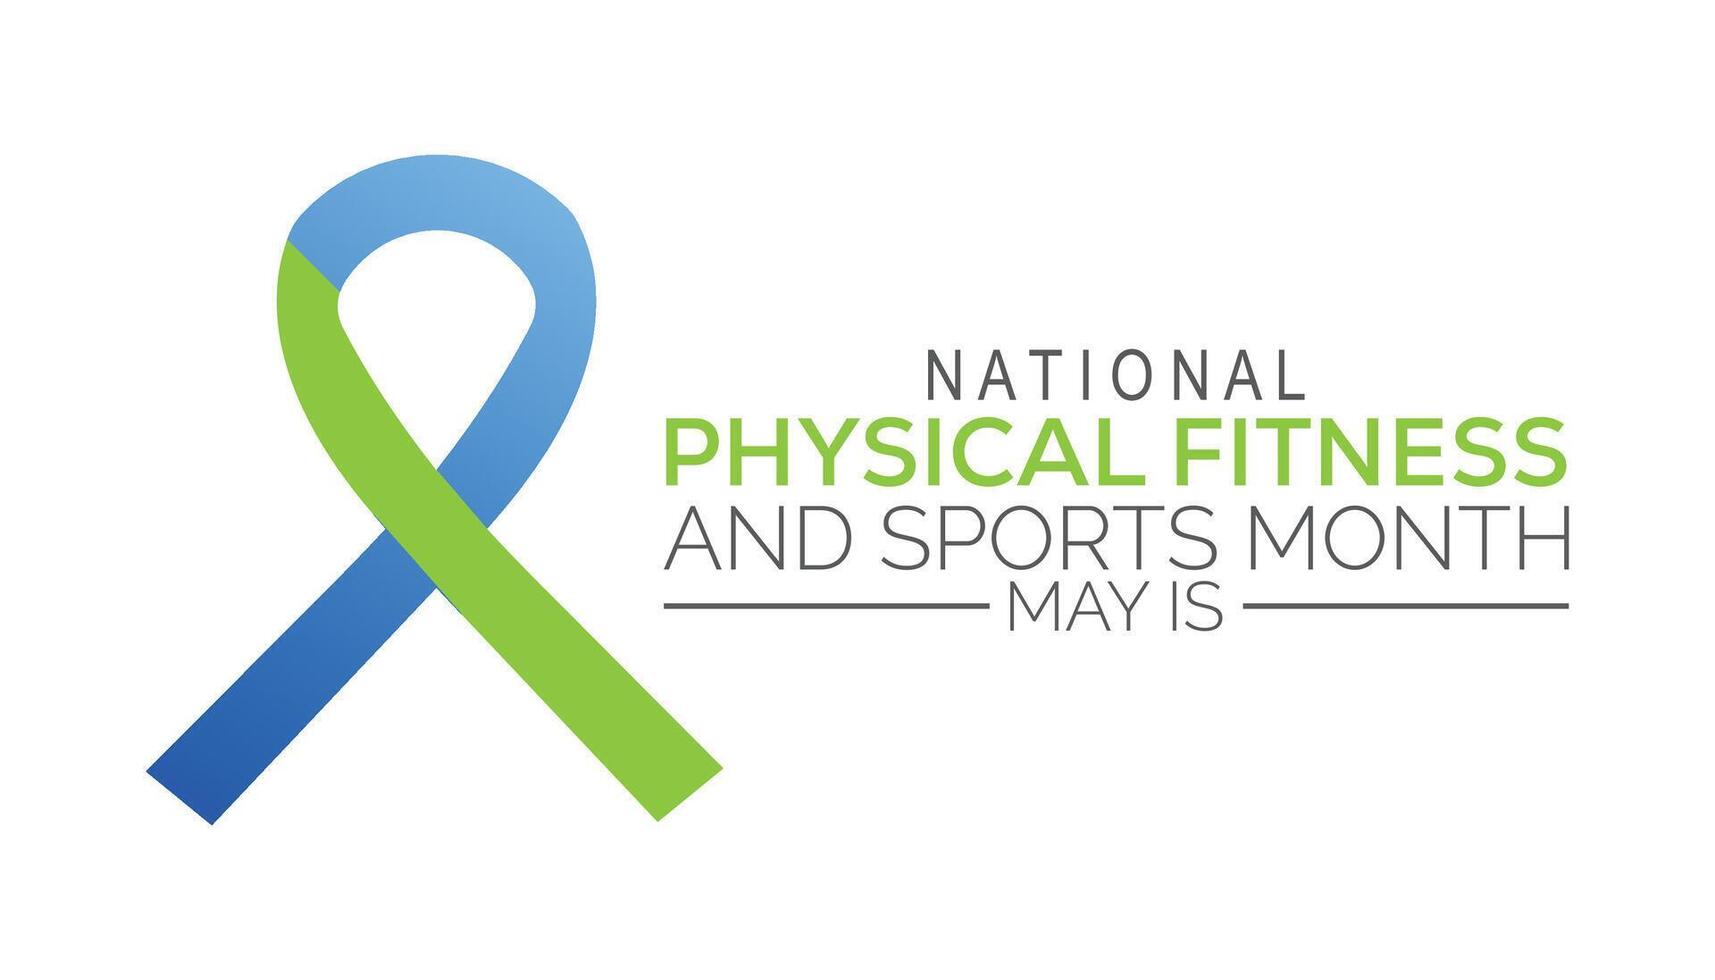 nationell fysisk kondition och sporter månad observerats varje år i Maj. mall för bakgrund, baner, kort, affisch med text inskrift. vektor